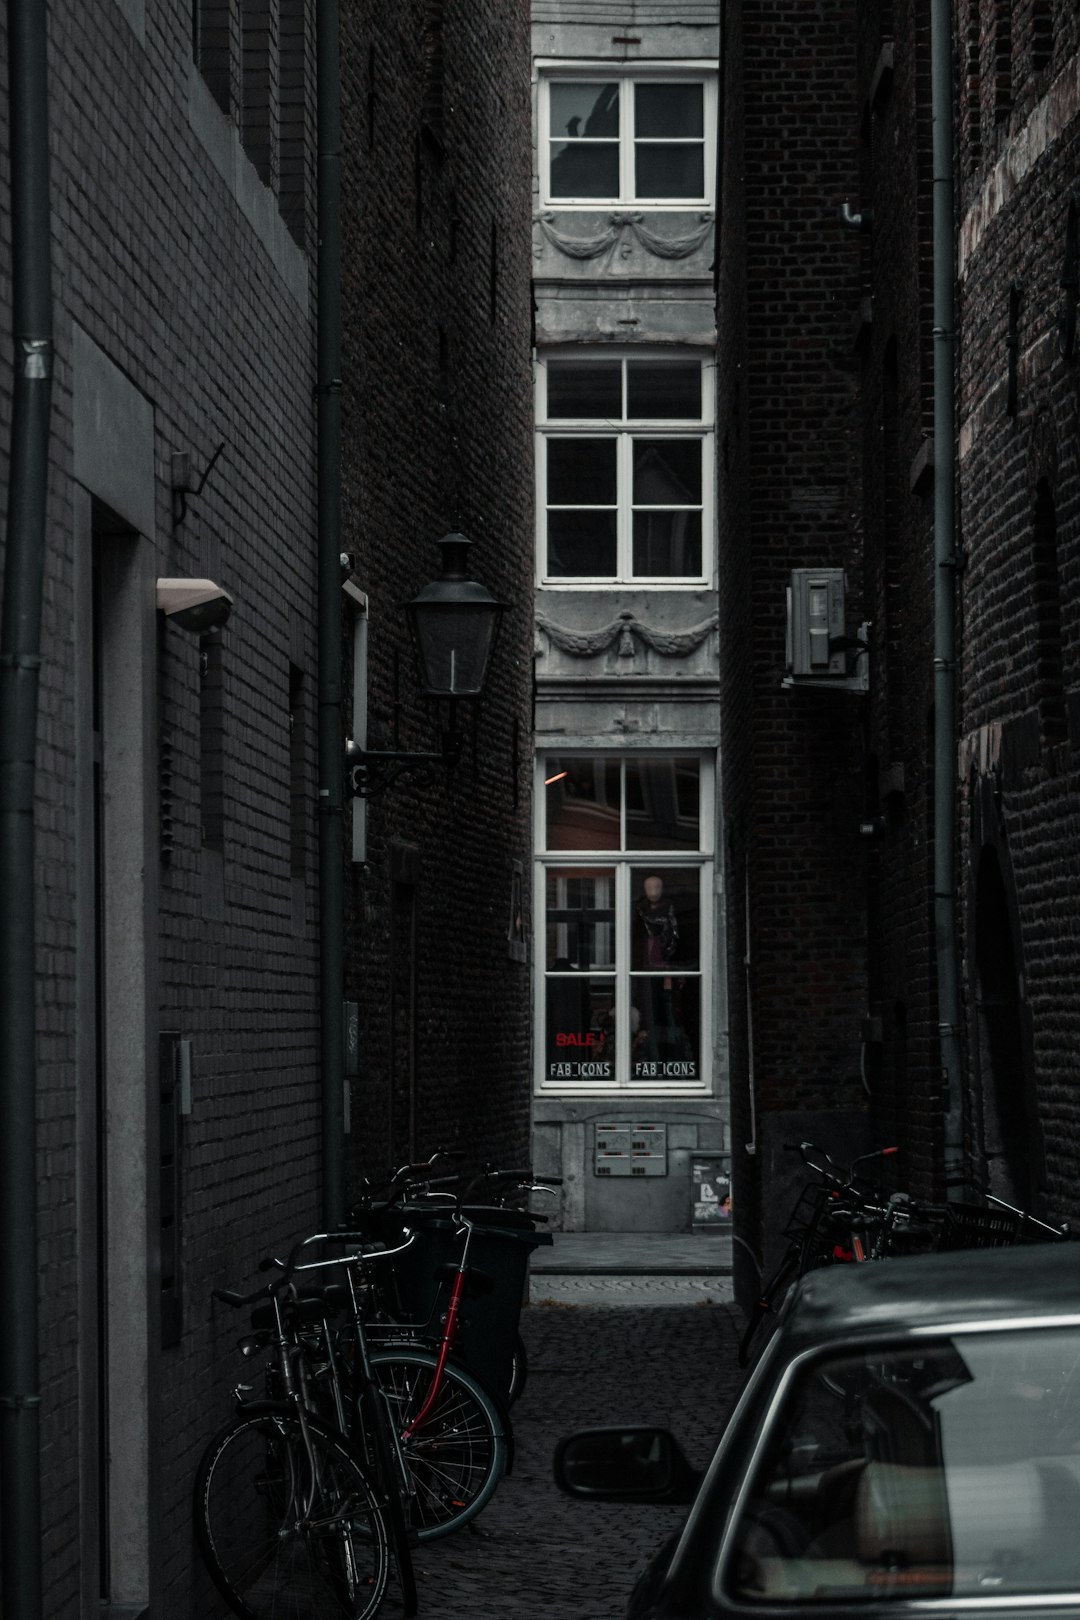 black bicycle parked beside brown brick building